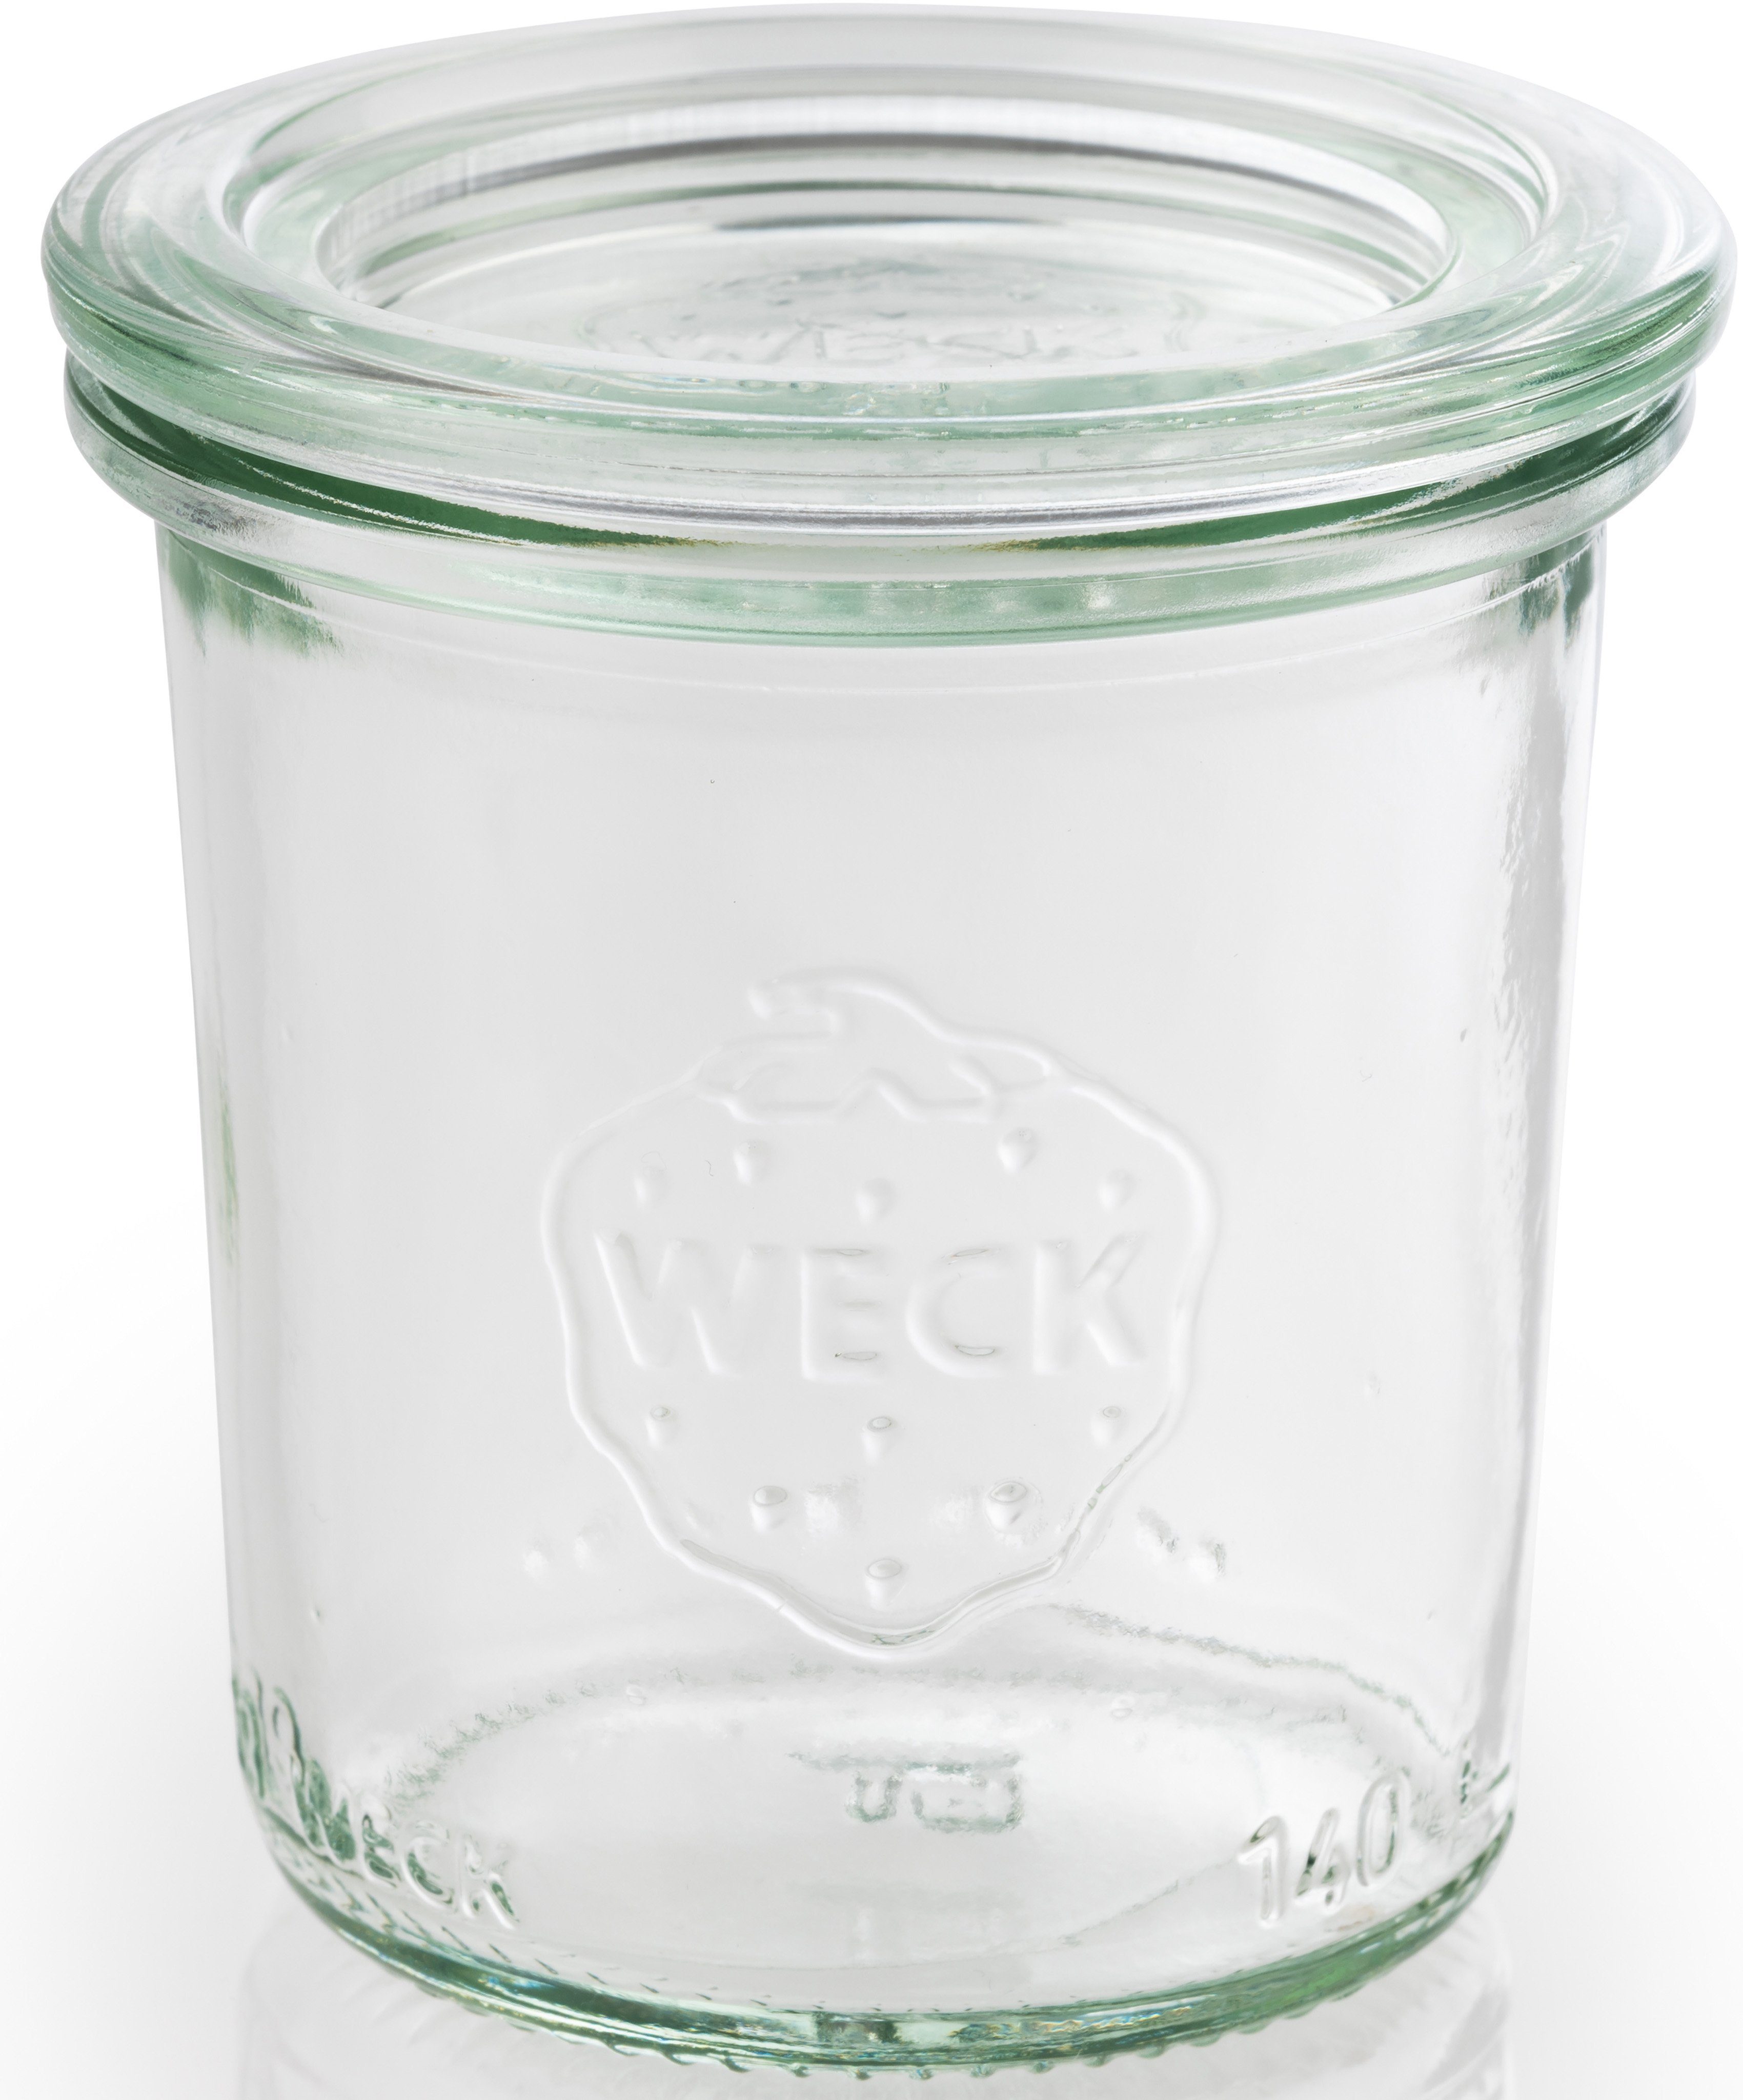 APS Einmachglas Weck, Glas, (Set, 12-tlg), vielseitig einsetzbar, zum Präsentieren/Bevorraten/Einfrieren, Deko